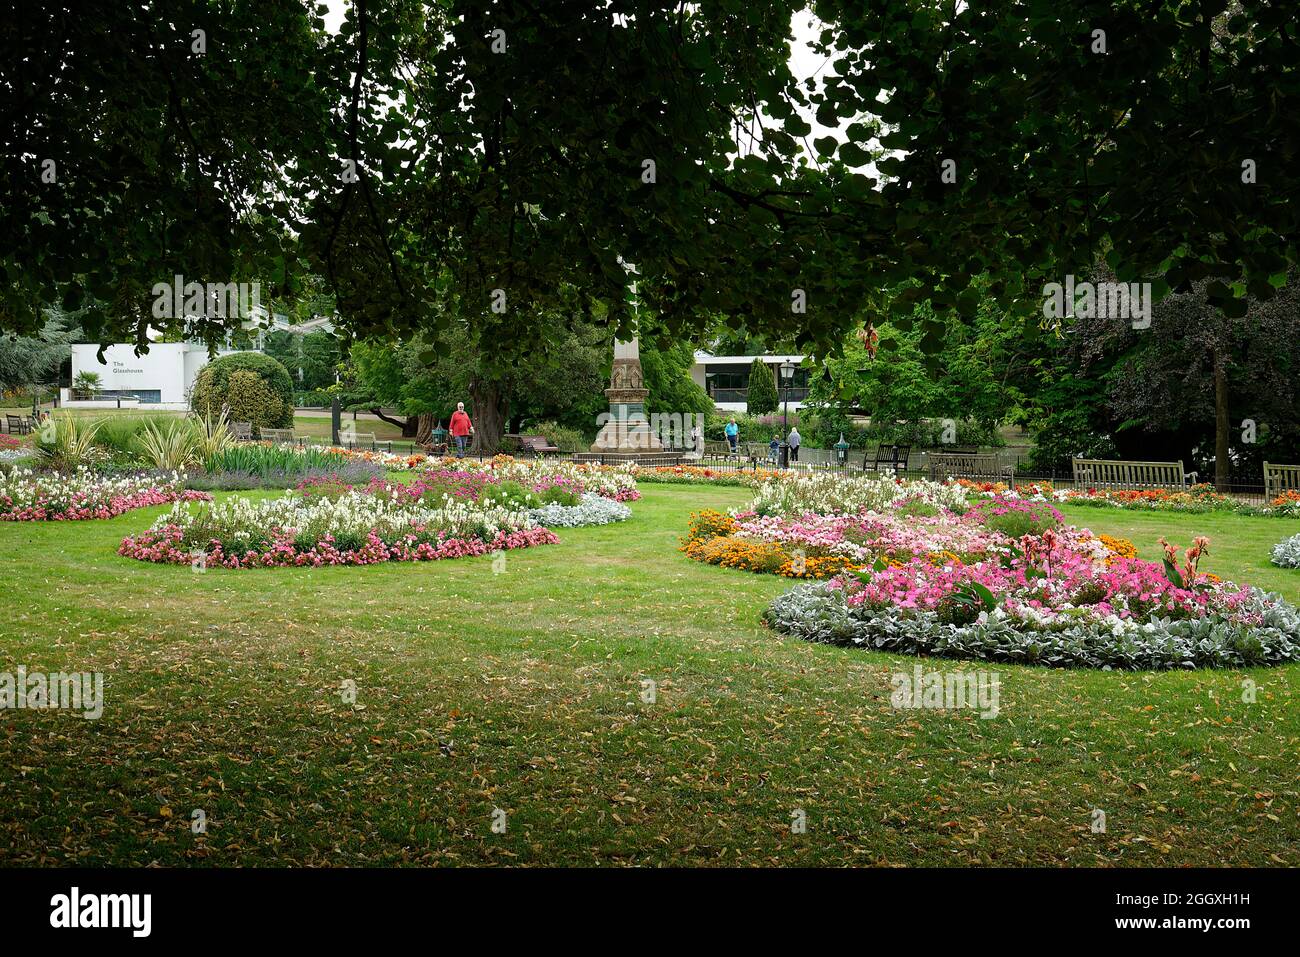 Öffentliche Gartenblumenpflanzungen im Sommer. Bunte Blumenarrangements in Beeten in England. Stockfoto